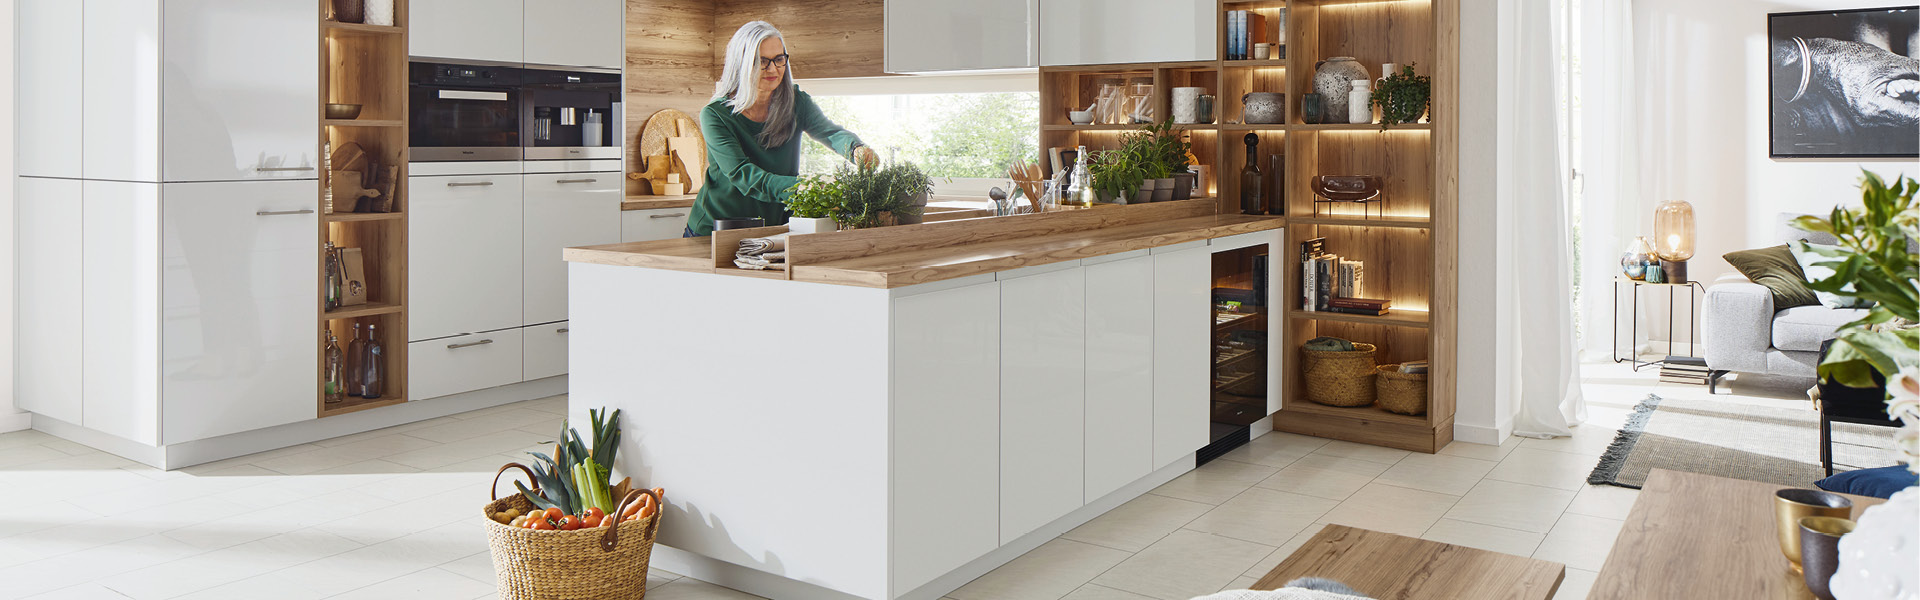 Frau in Küche Weiß mit Holzoptik